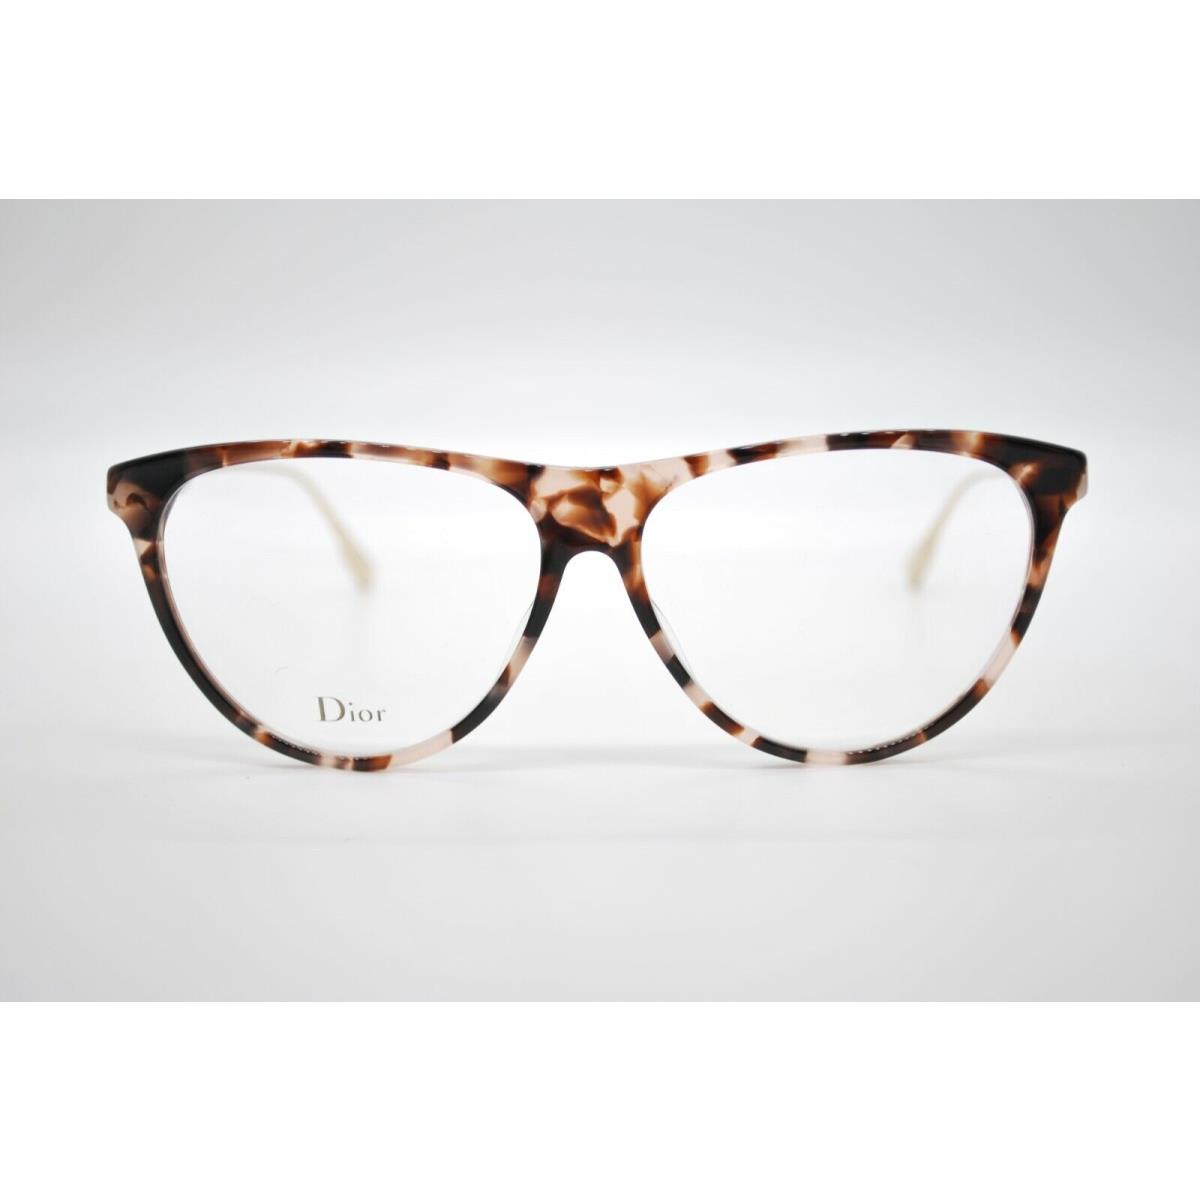 Dior eyeglasses  - PINK HAVANA Frame 1